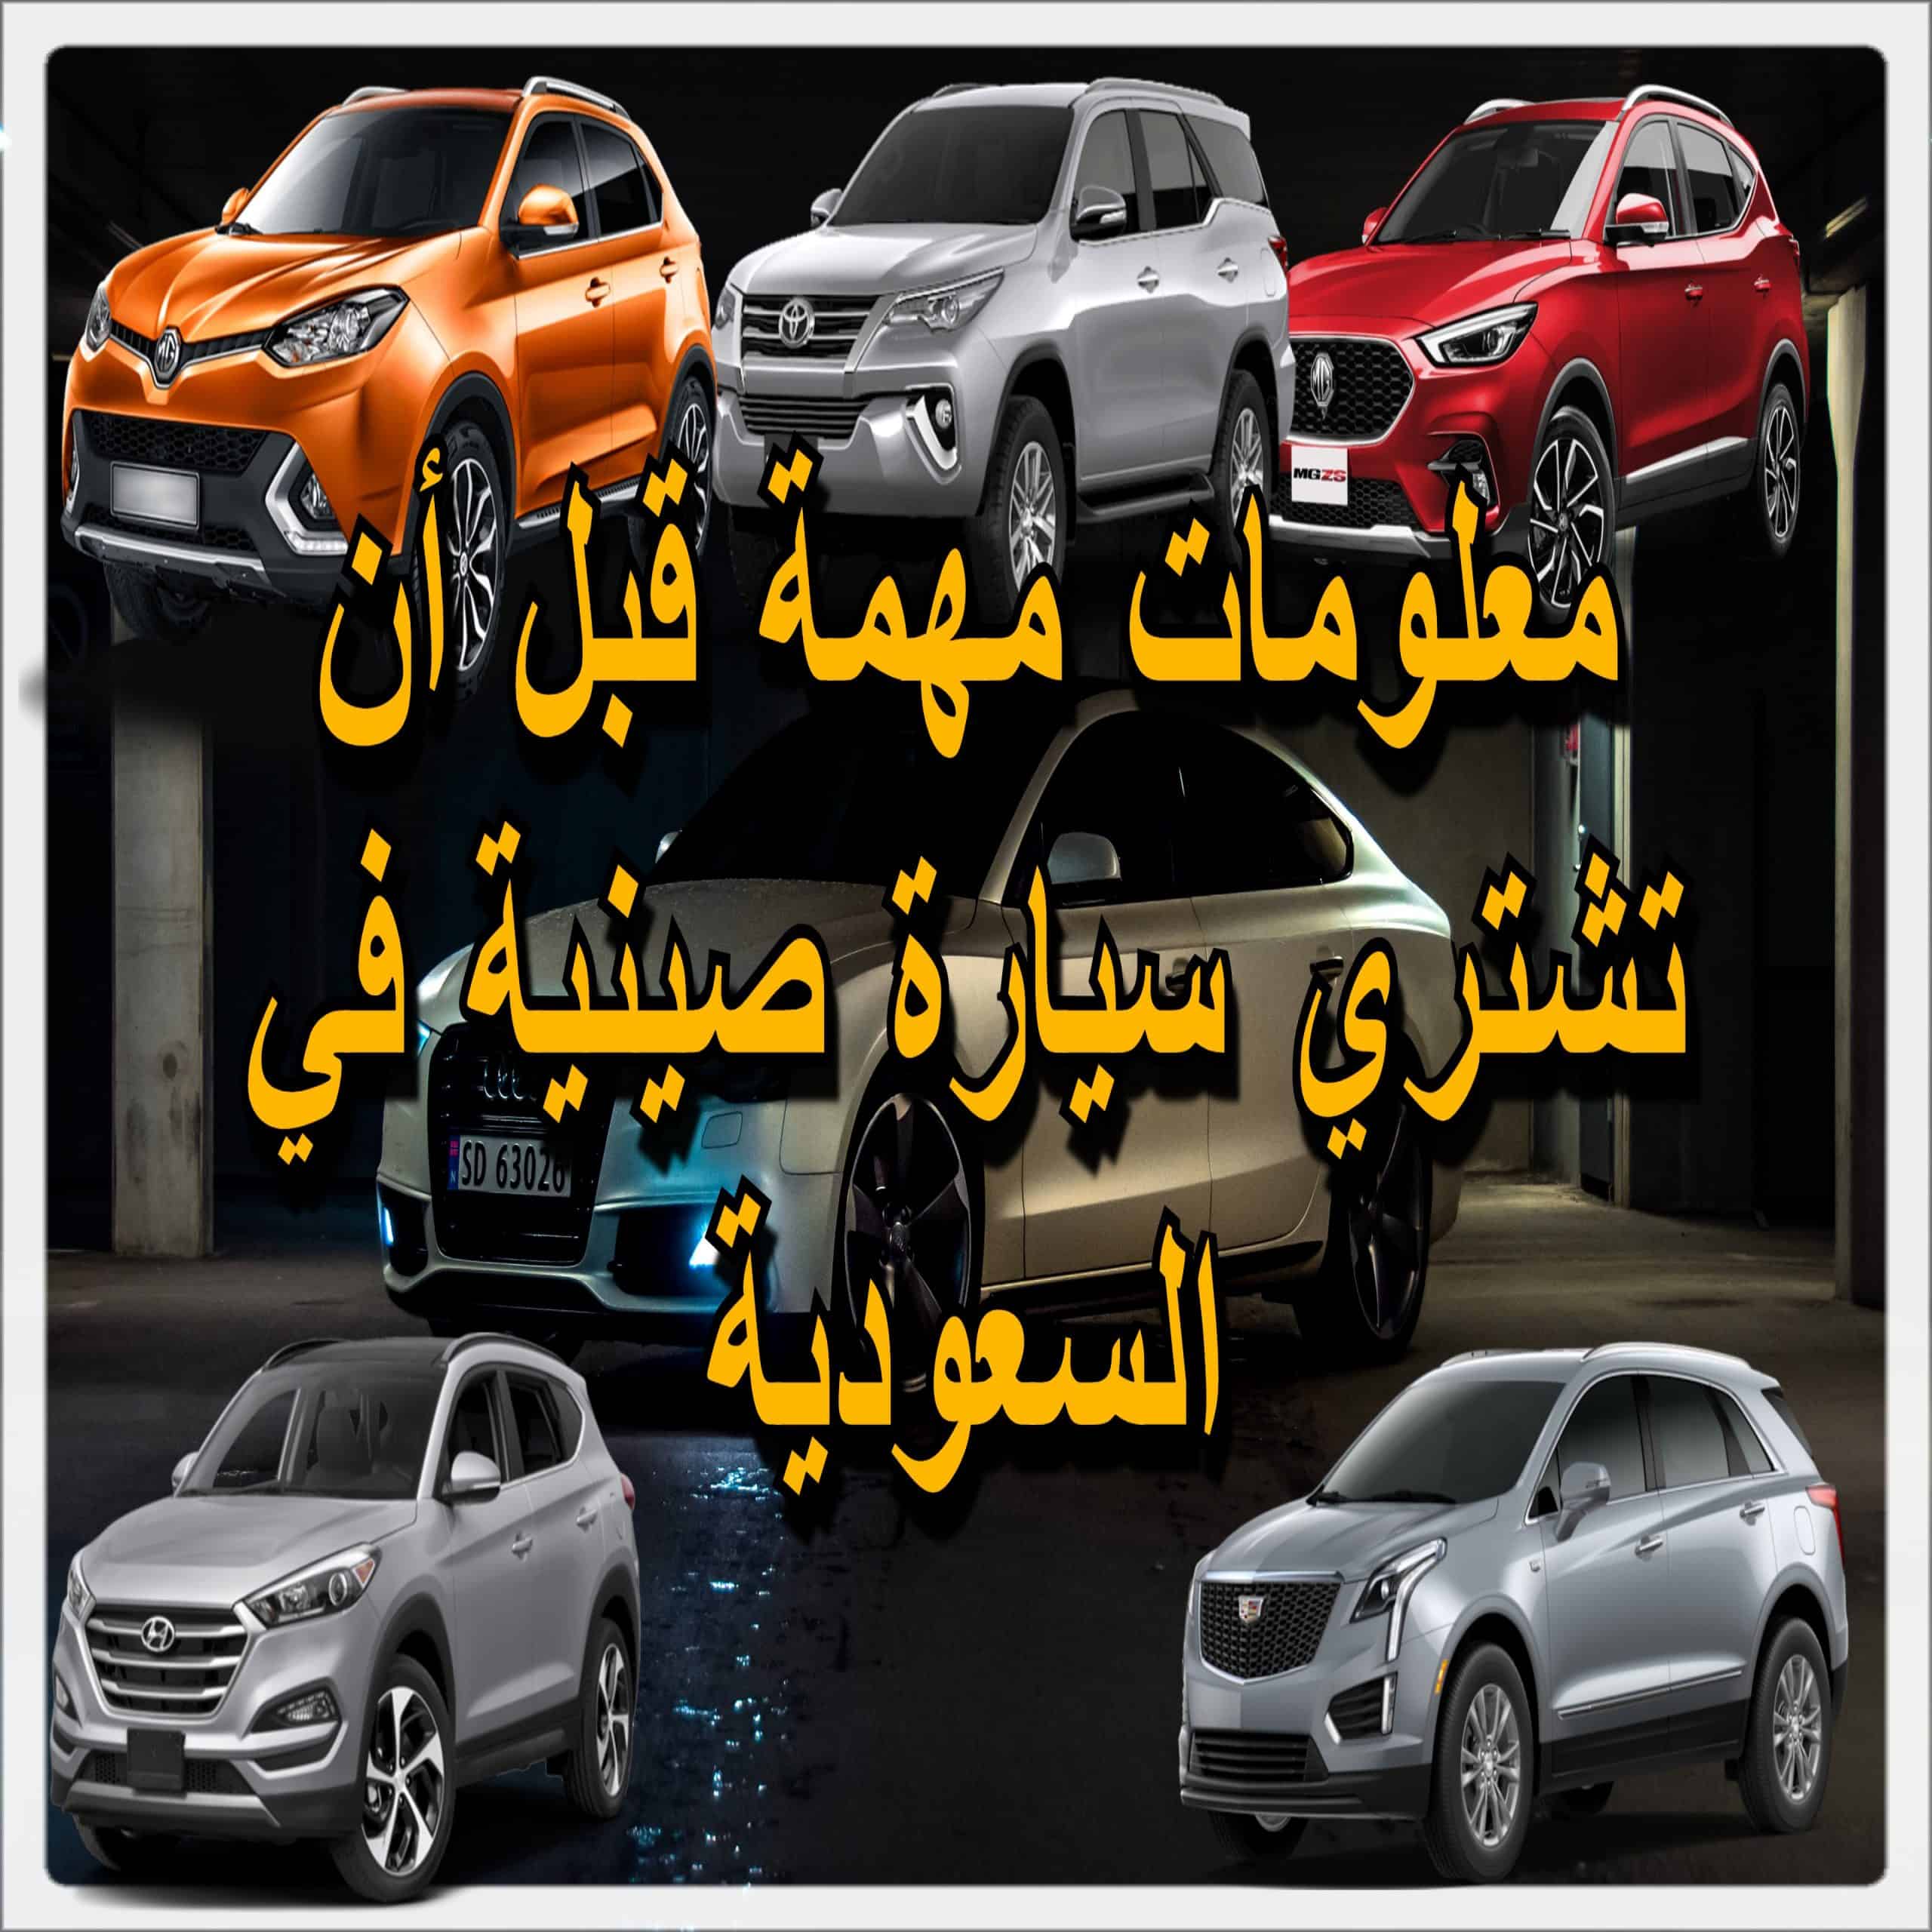 سيارات صينية 2021 في السعودية، مهم لمن يرغب بشراء سيارة صينية في السعودية